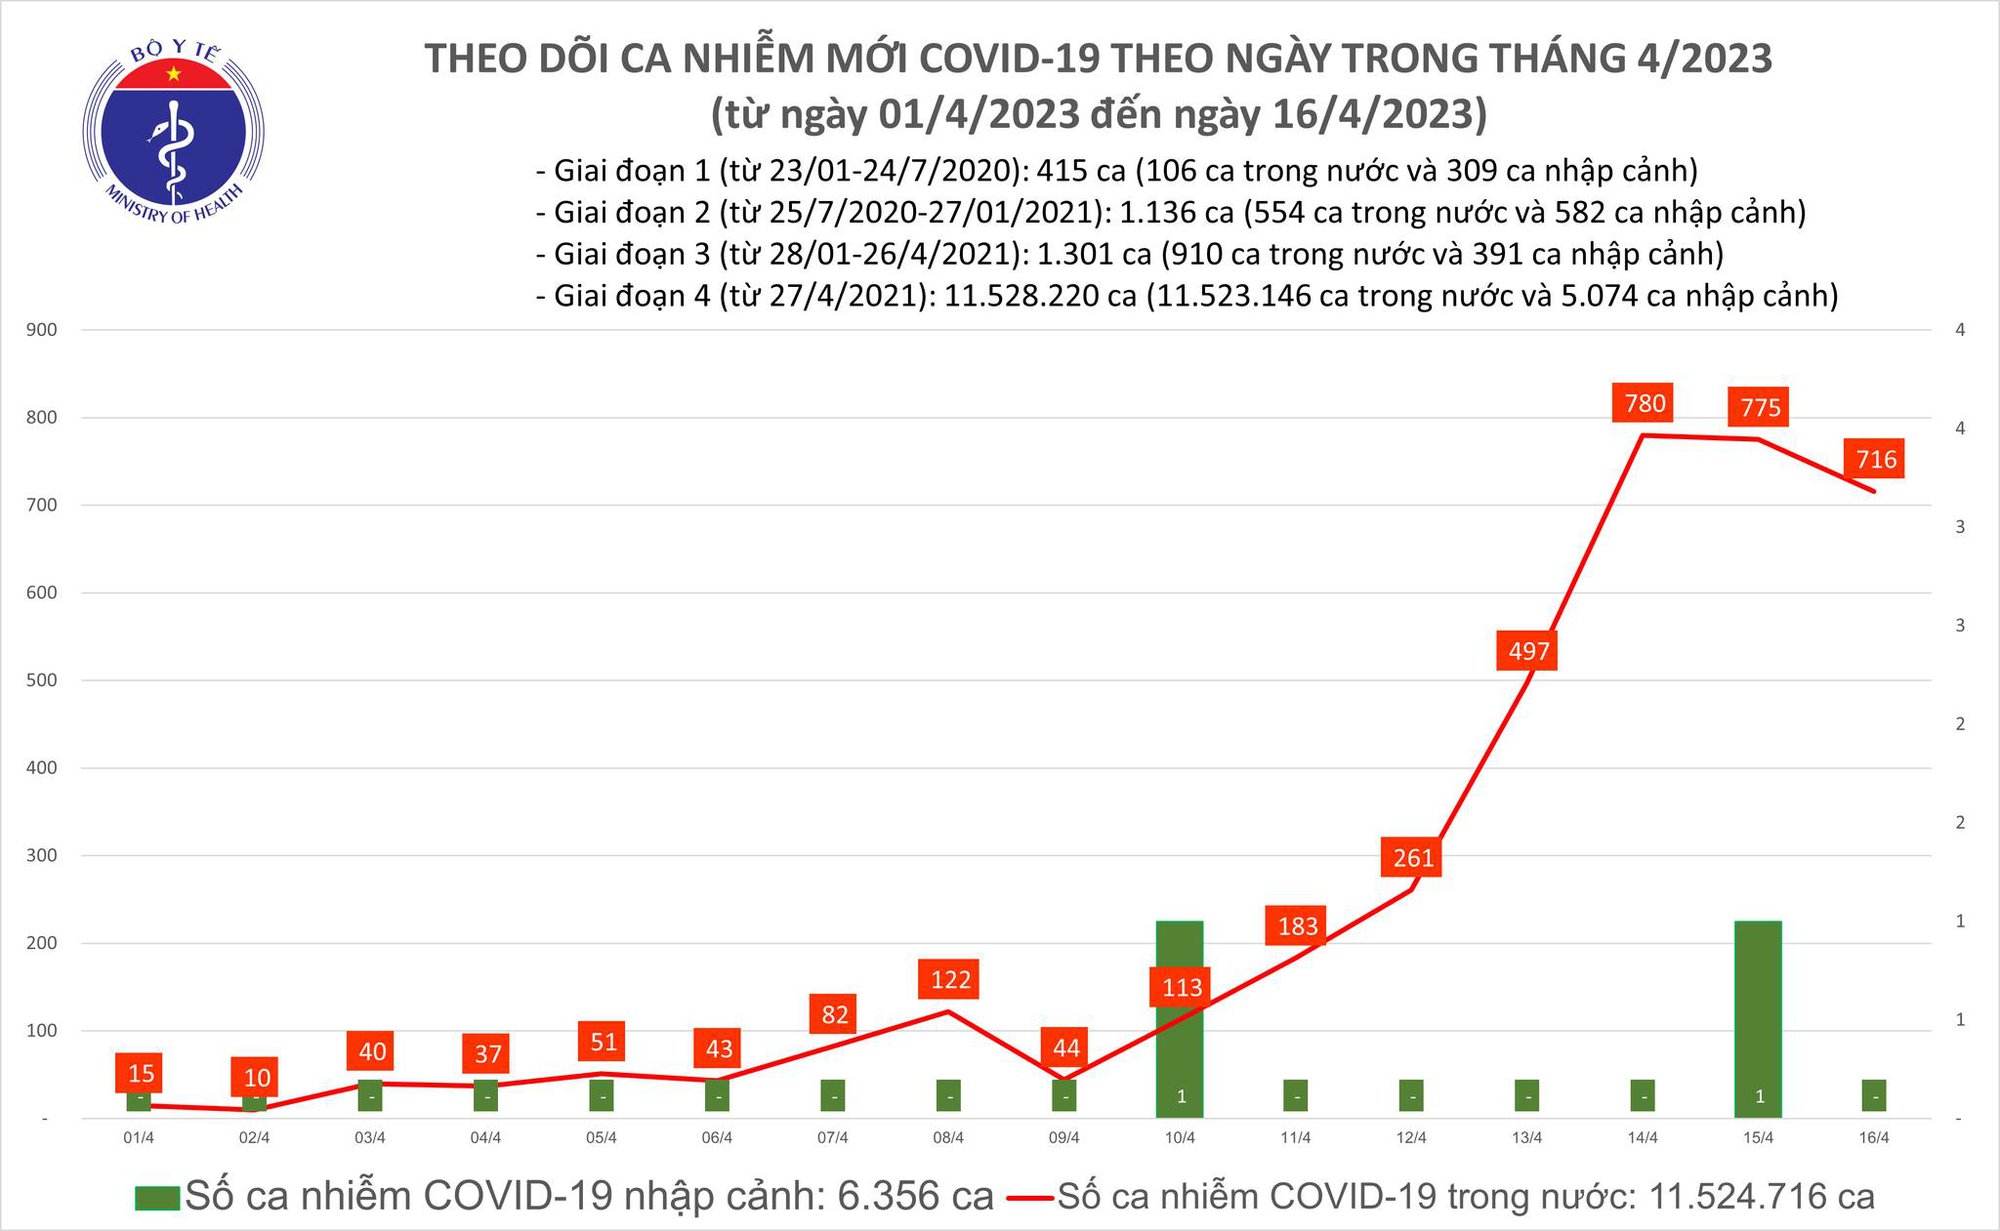 Ngày 16/4: Có 716 ca COVID-19, bệnh nhân thở oxy tăng vọt lên 38 ca - Ảnh 2.